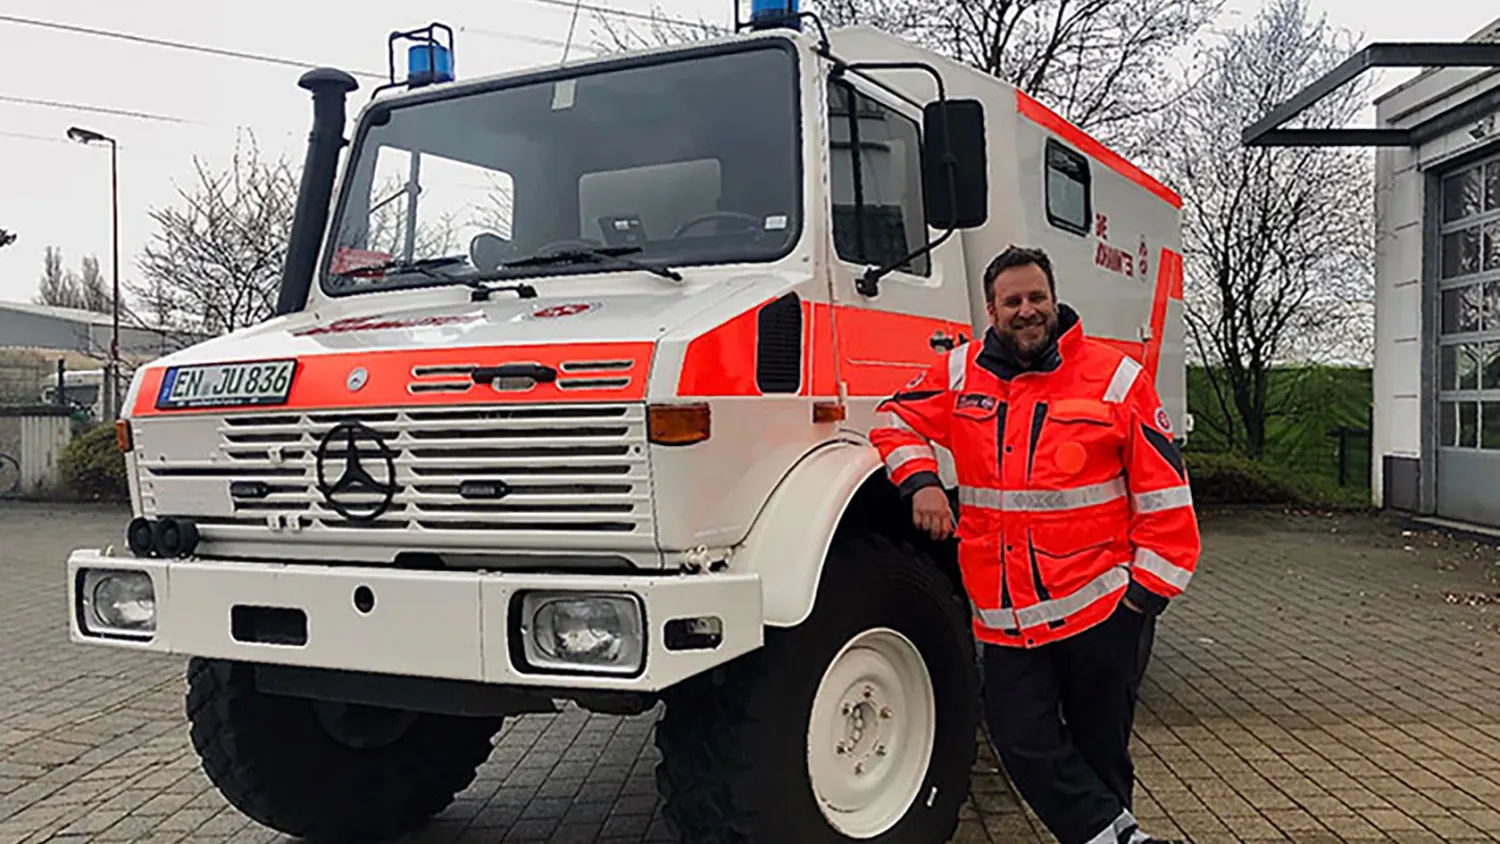 Generisch Stadt Land Rettungswagen Rätzel RTW Rettungsdienst